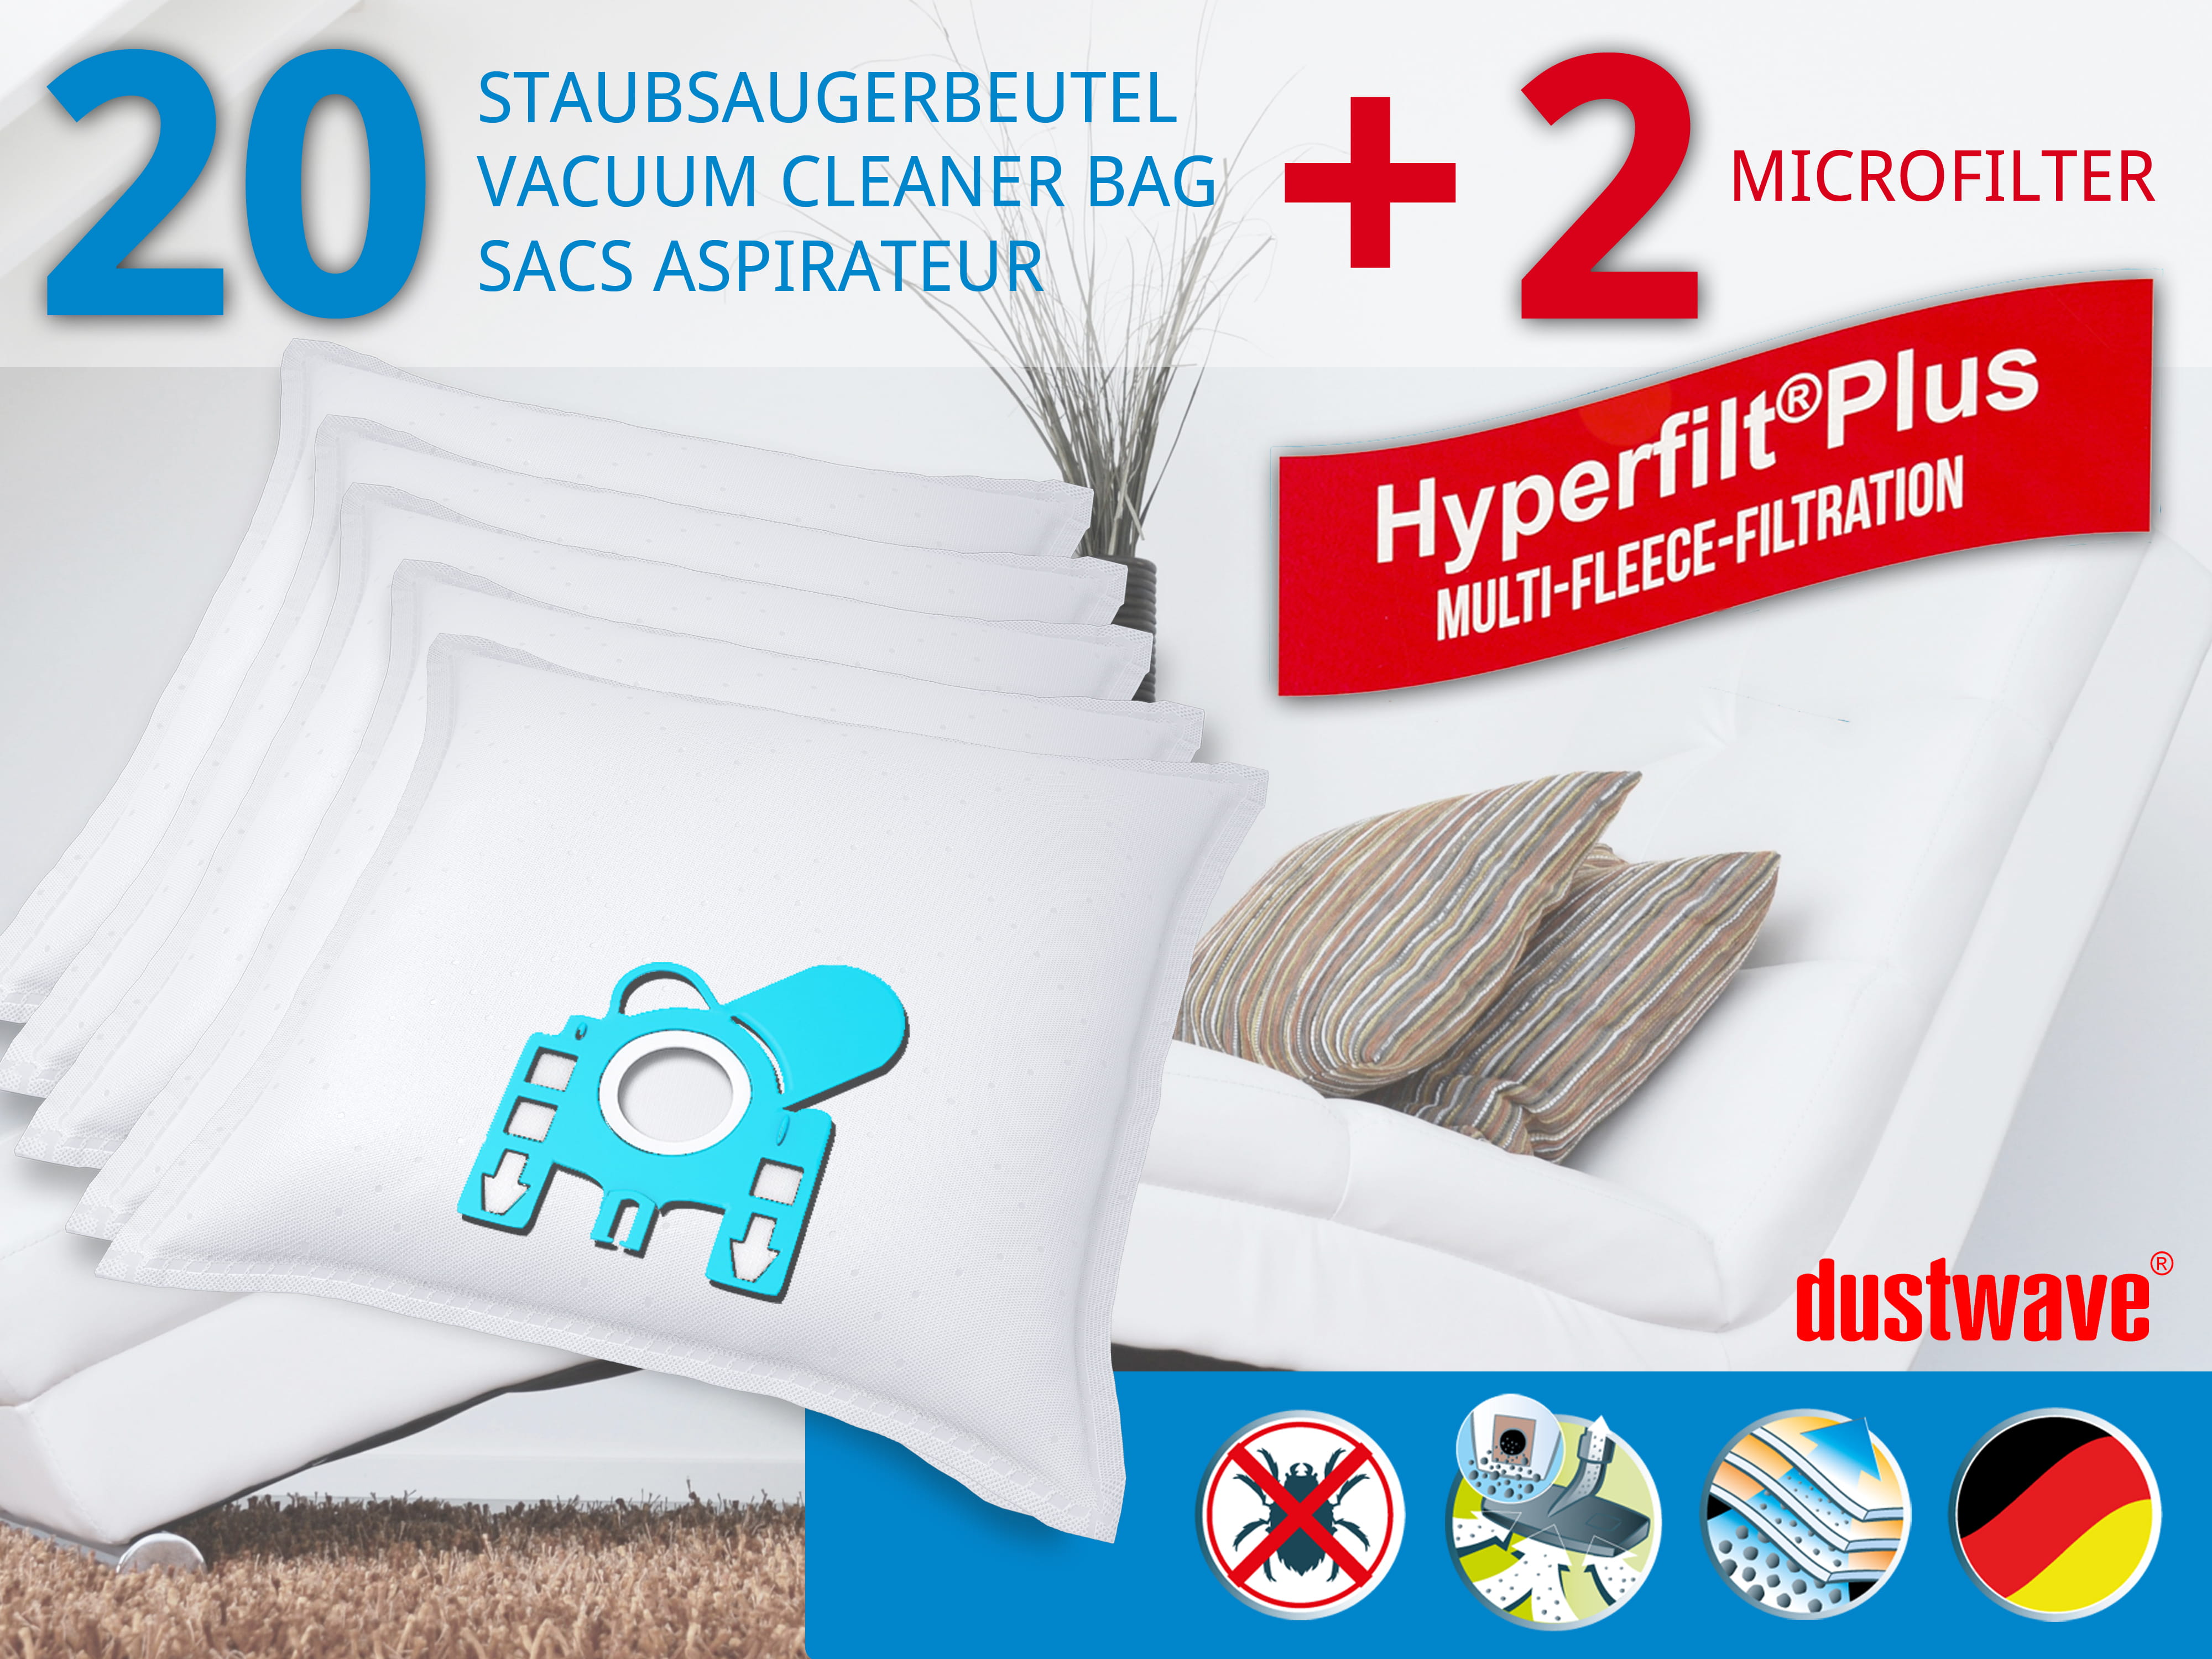 Dustwave® 20 Staubsaugerbeutel für Miele S640 / S640 - hocheffizient, mehrlagiges Mikrovlies mit Hygieneverschluss - Made in Germany